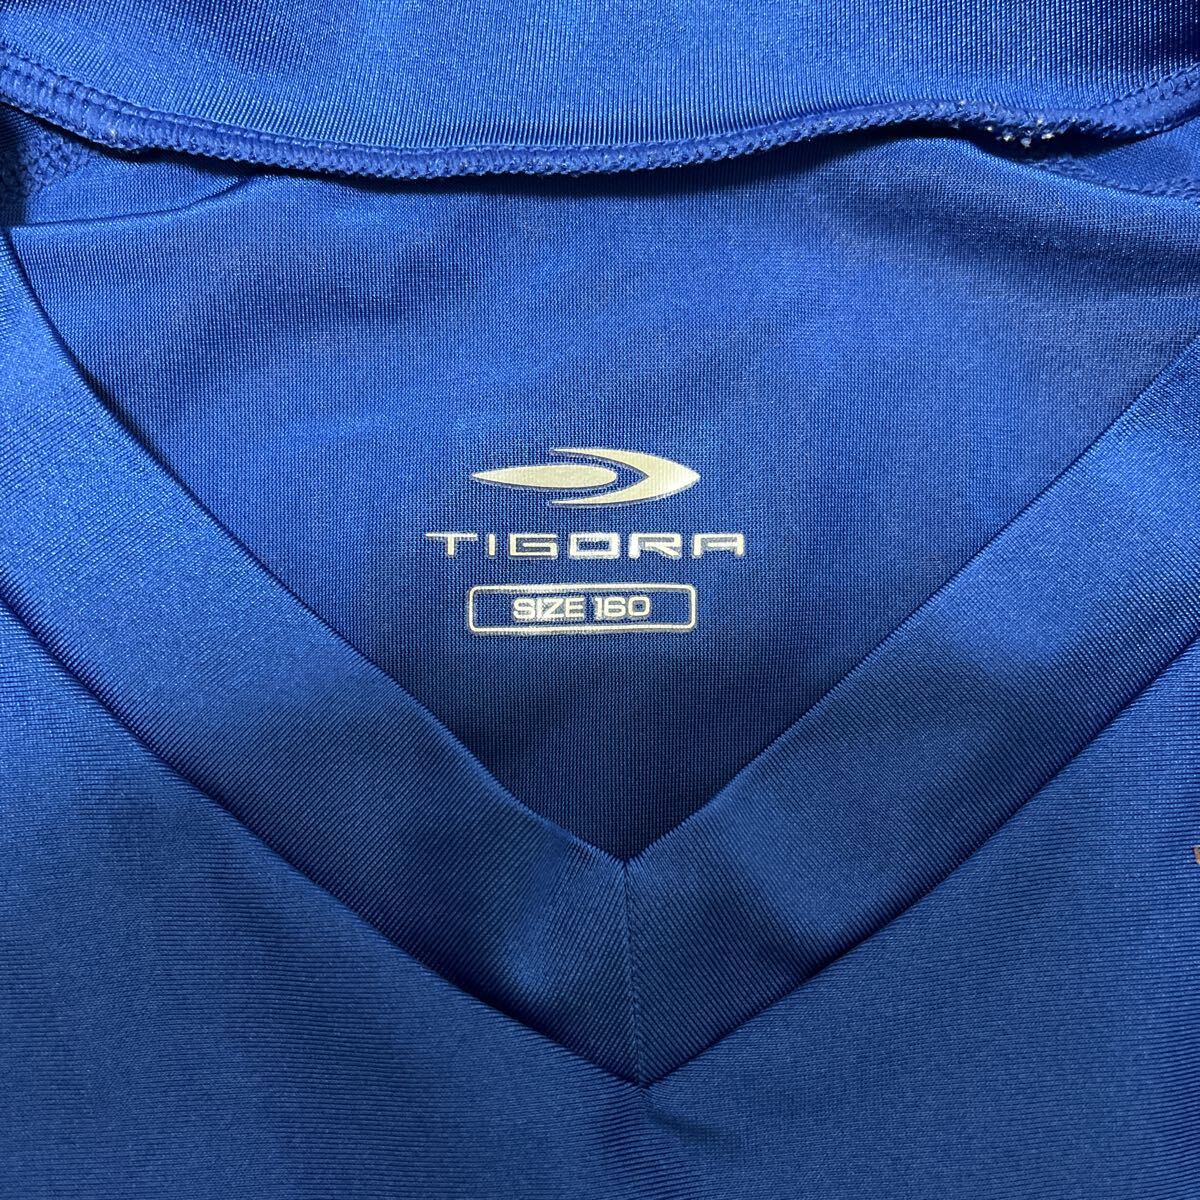 TIGORAtigola безрукавка компрессионный рубашка 160 размер голубой 